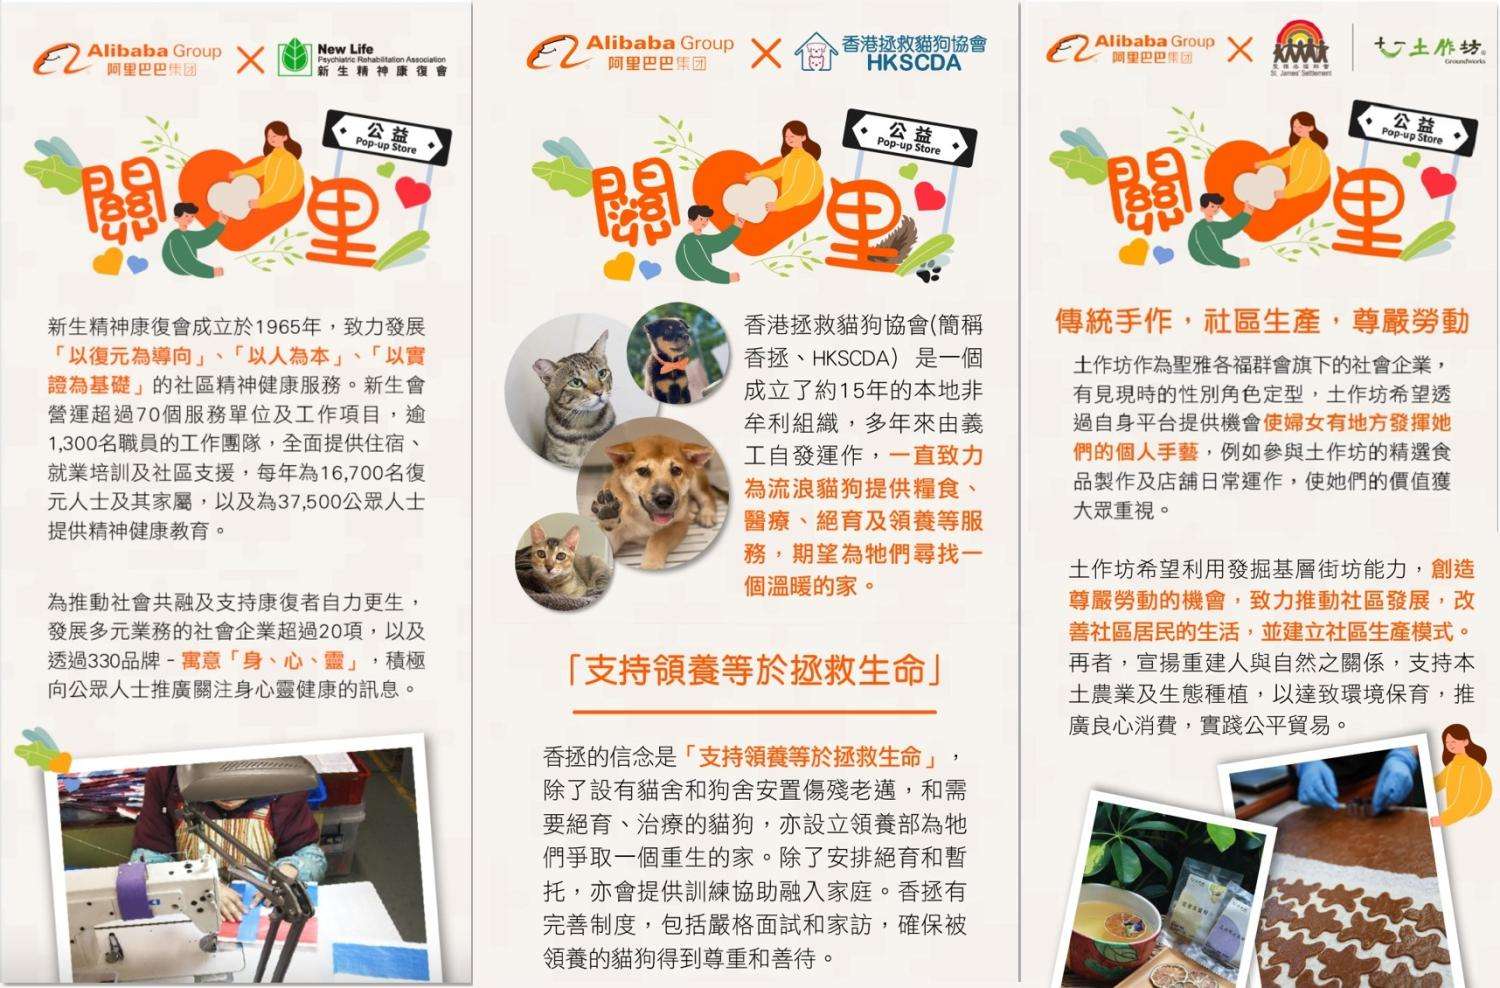 アリババは、3カ月間で3つの香港地域の社会福祉団体から協力を得て、Eコマースプラットフォーム「天猫香港」で地域密着型商品を提供、利益は各団体に還元し、団体の認知度向上や支援拡大に繋げました。